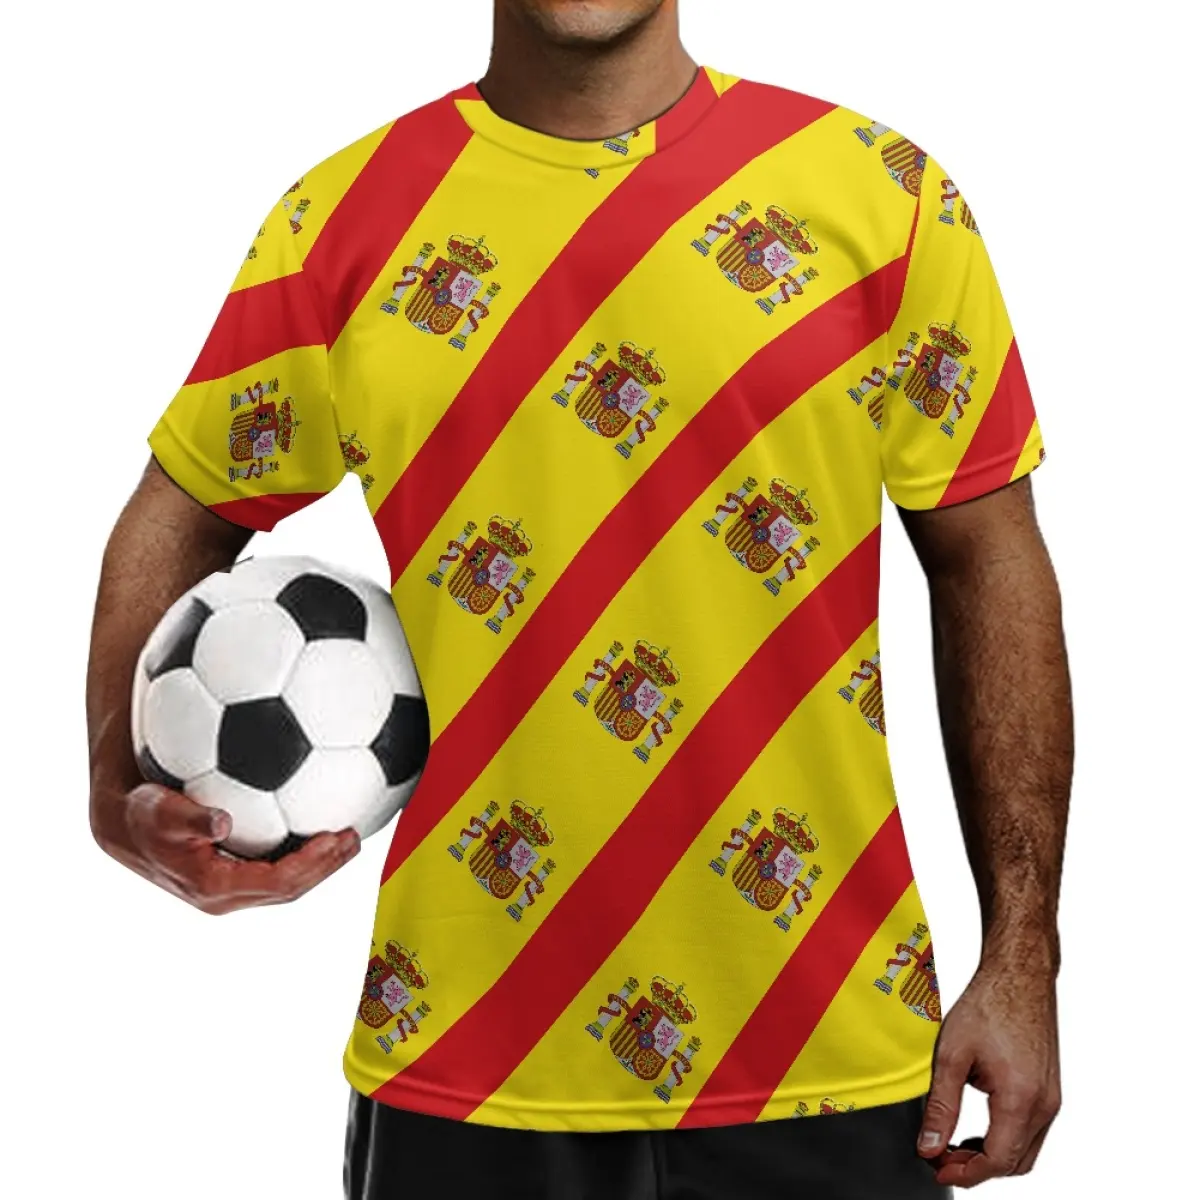 Camiseta esportiva personalizada com desenho de time nacional de futebol, camiseta esportiva com cores do emblema nacional da Espanha, atacado dropshipping